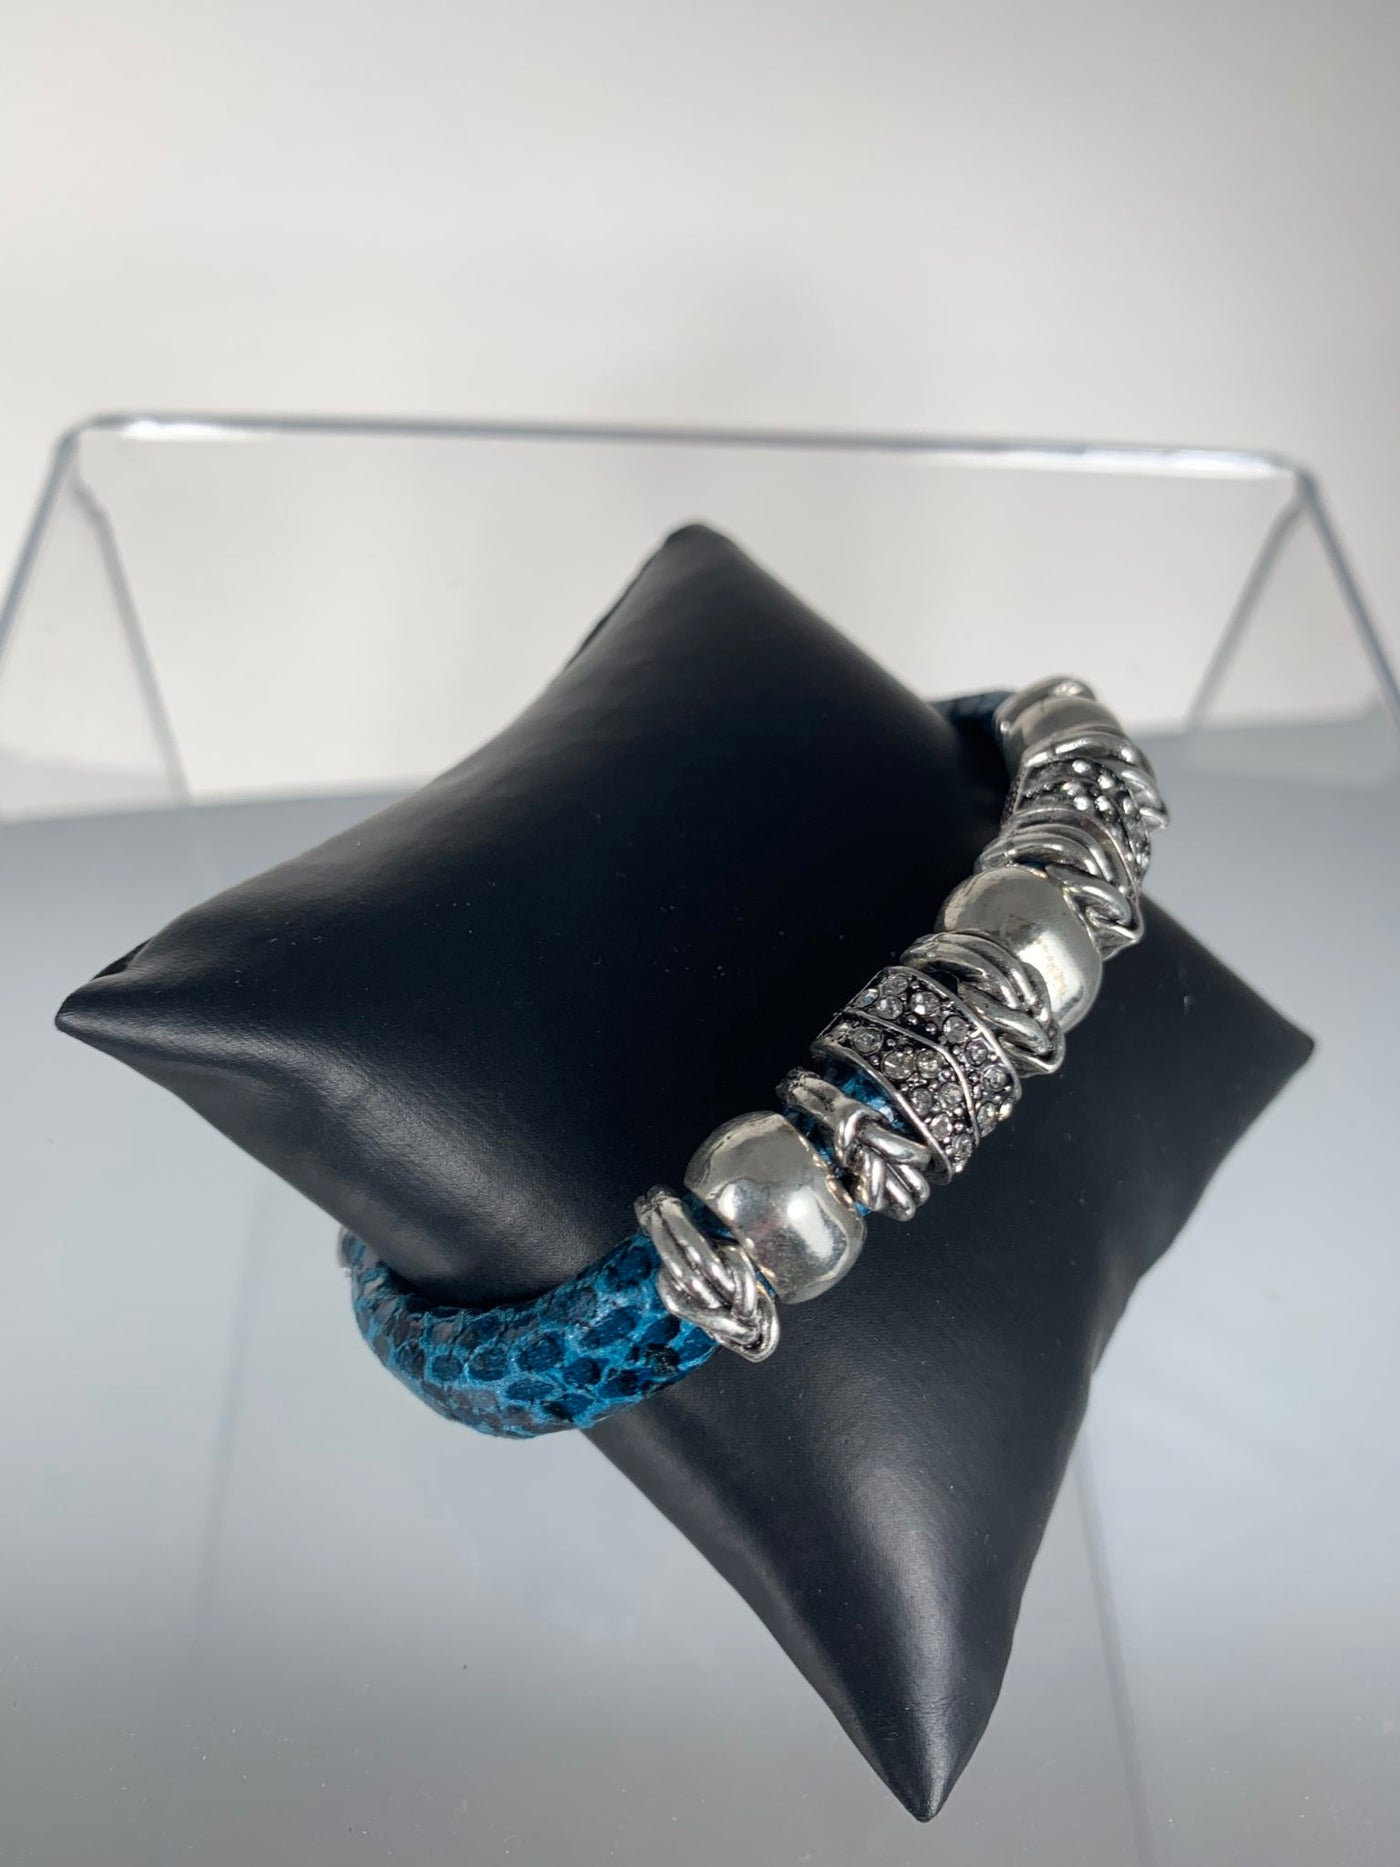 Blue Faux Snake Skin Band Bracelet with Sparks